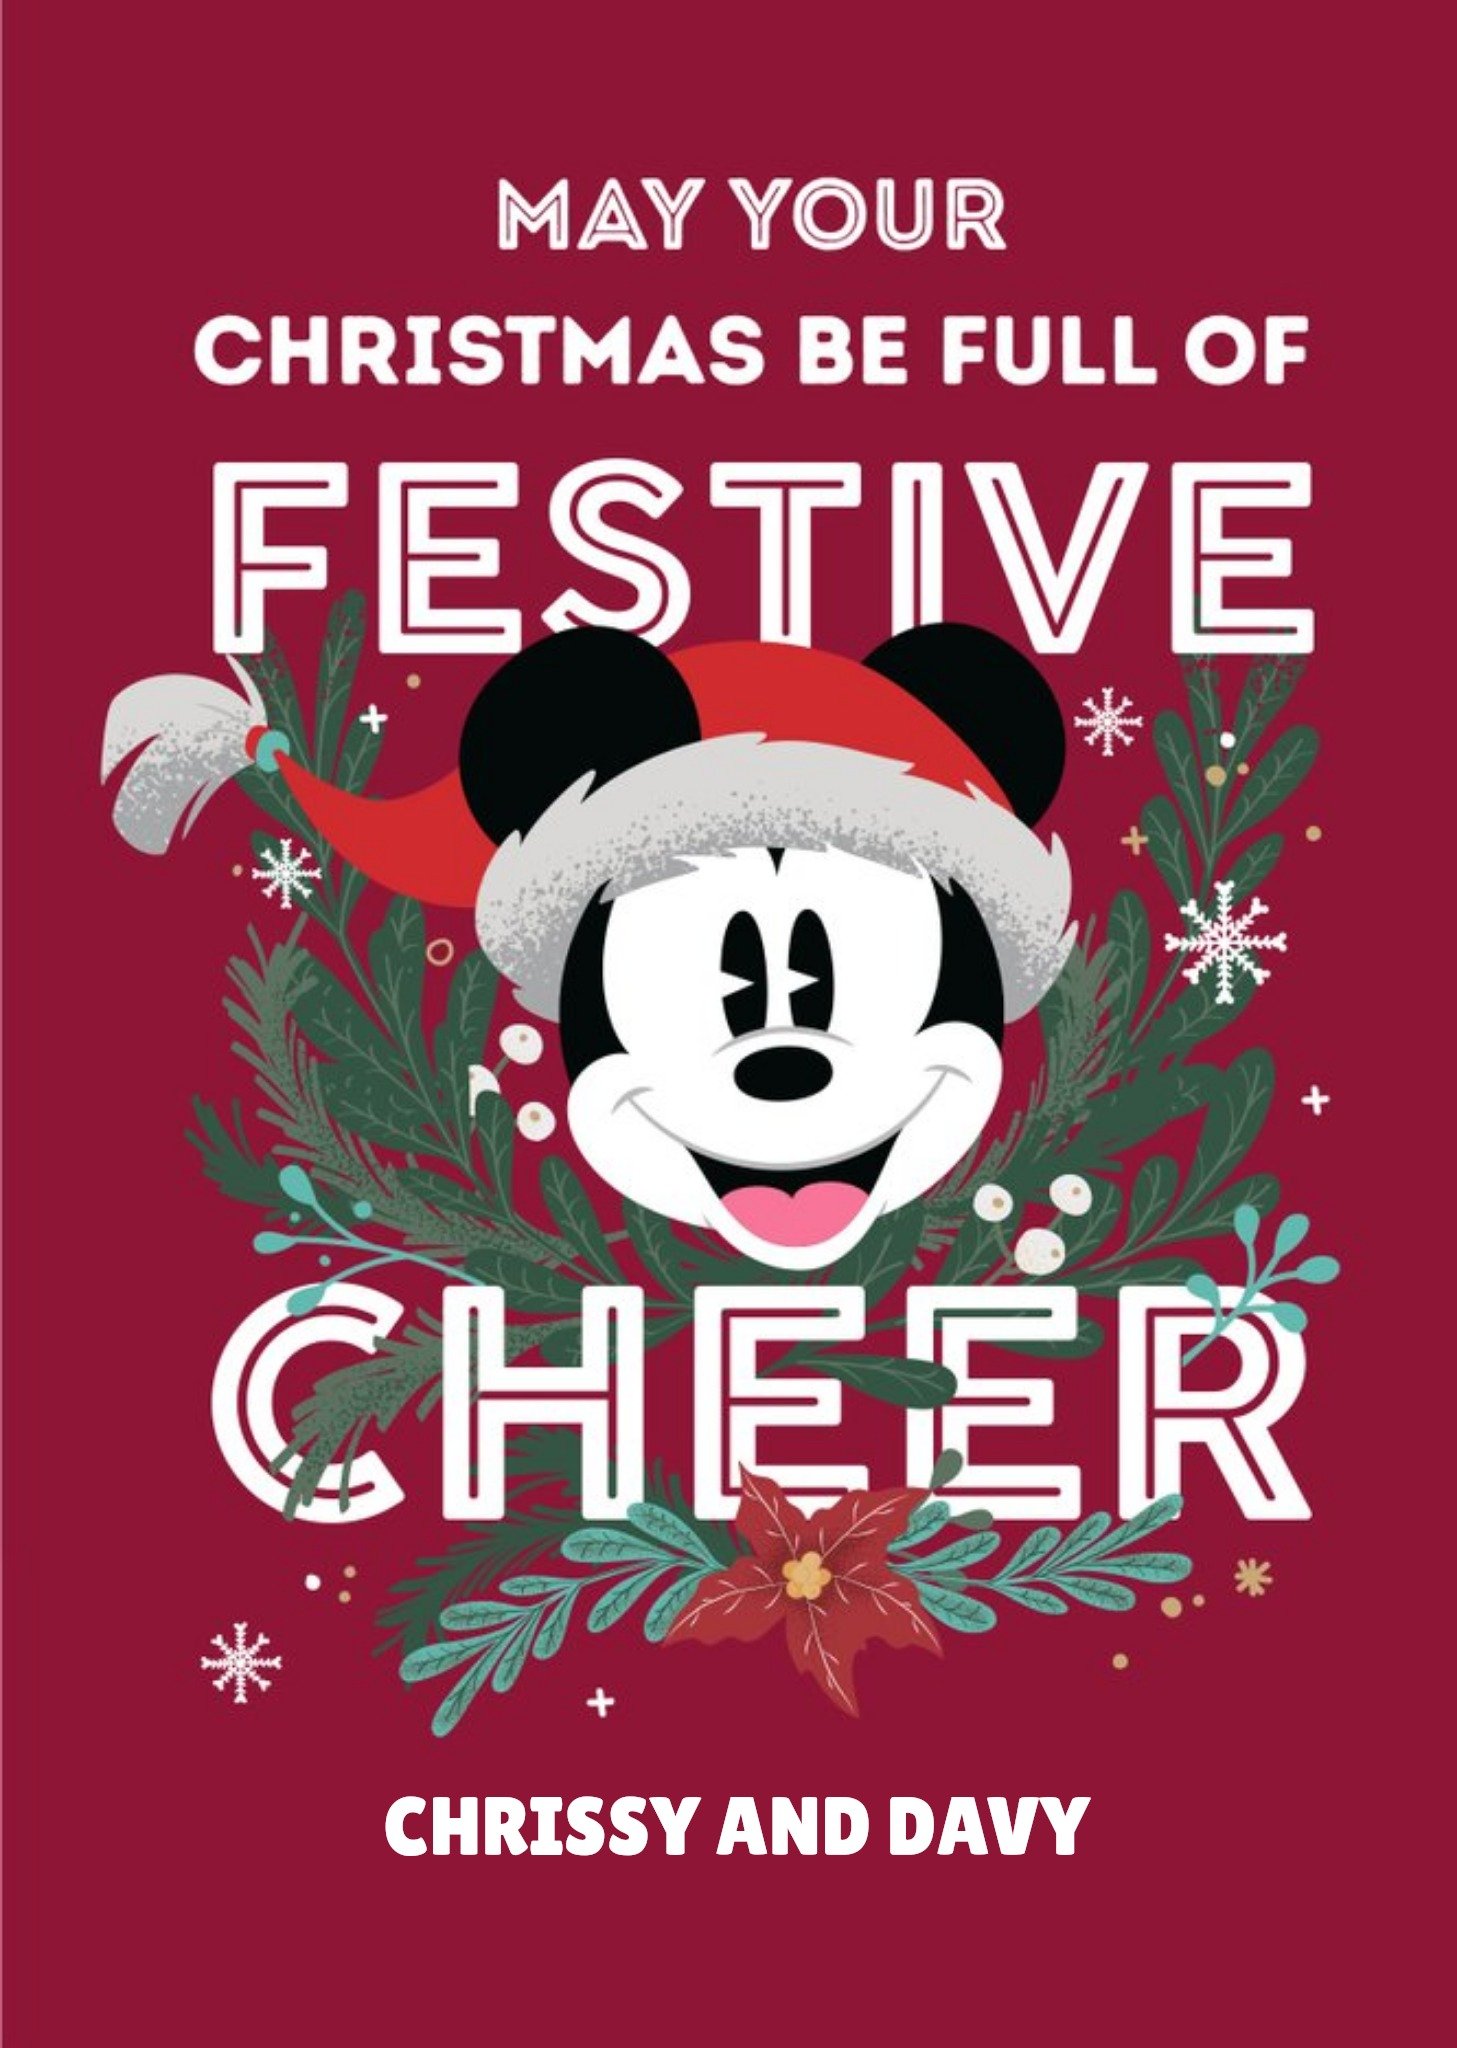 Disney Mickey Mouse Festive Cheer Christmas Card Ecard